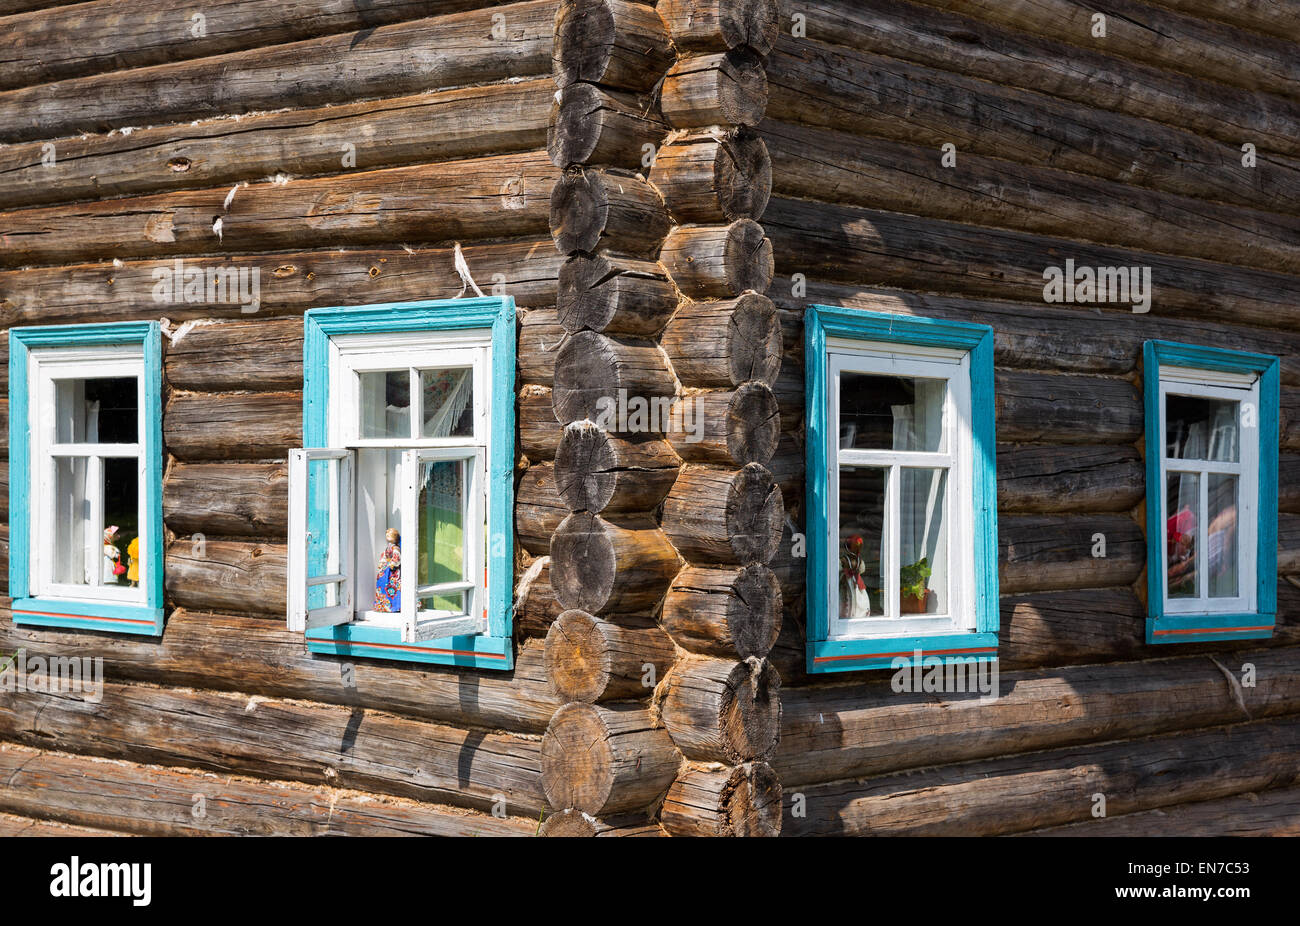 La Russie, dans la région de Leningrad, Mandrogi, un artisanat village sur la rivière Svir, vitres teintés d'une vieille maison de bois Banque D'Images